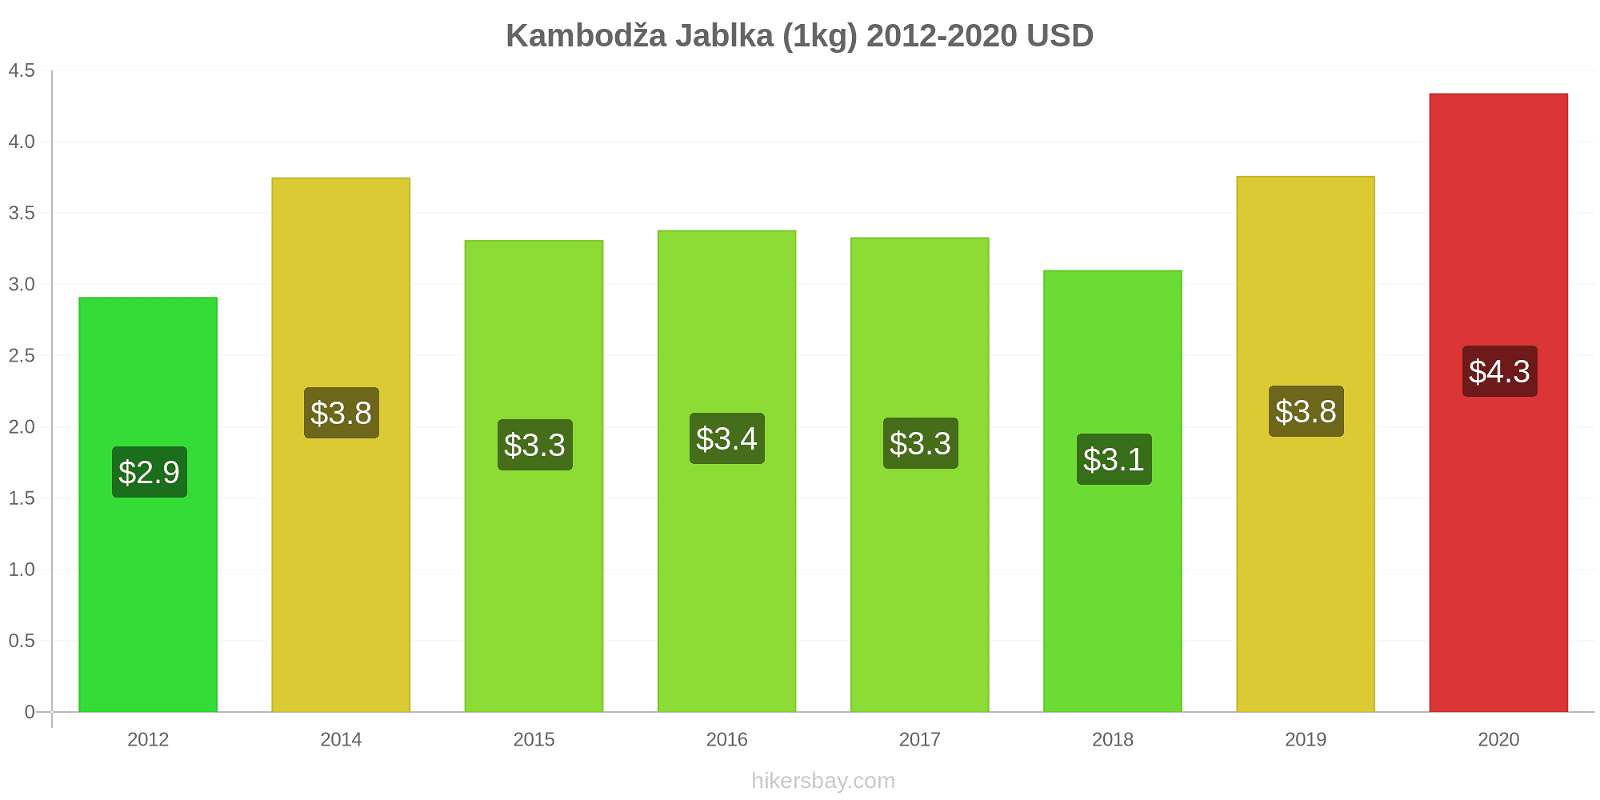 Kambodža změny cen Jablka (1kg) hikersbay.com